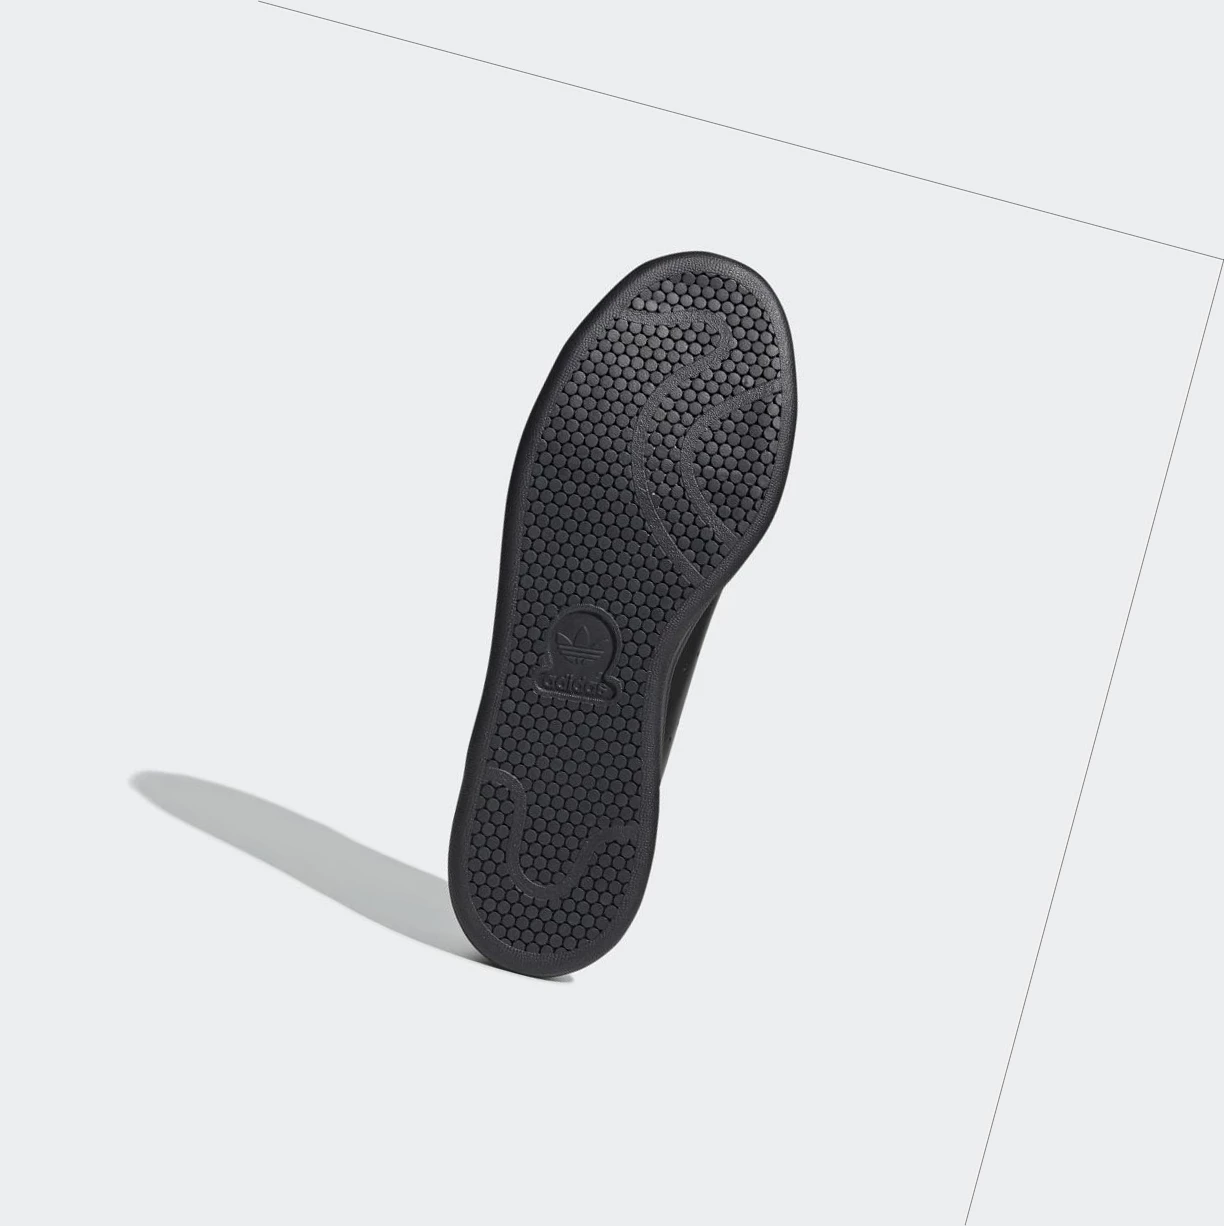 Originálne Topánky Adidas Stan Smith Recon Damske Čierne | 314SKXPFKIH